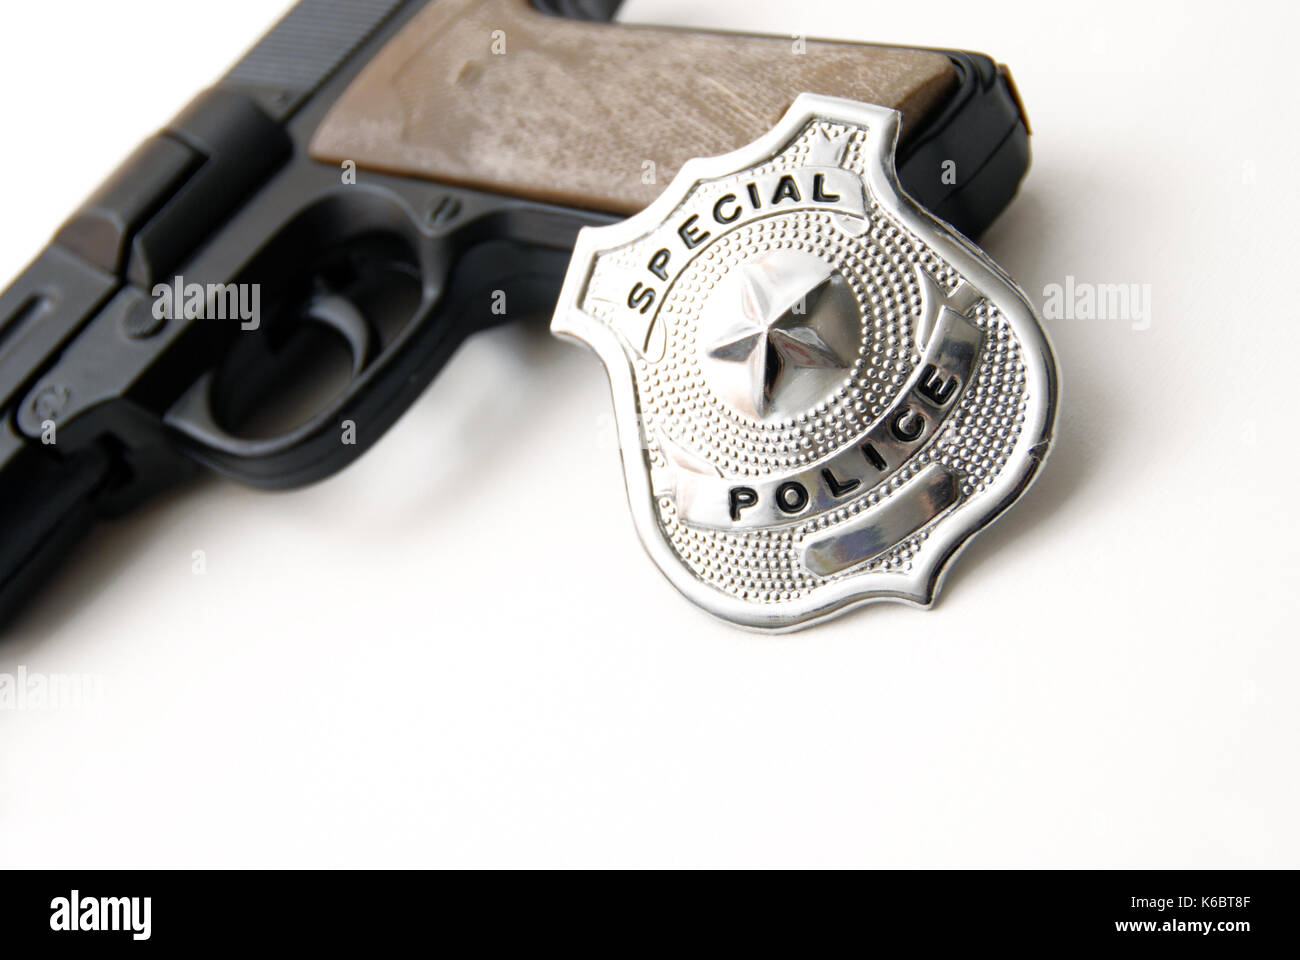 Pistola e distintivo di polizia, diritto e il concetto di ordine Foto Stock